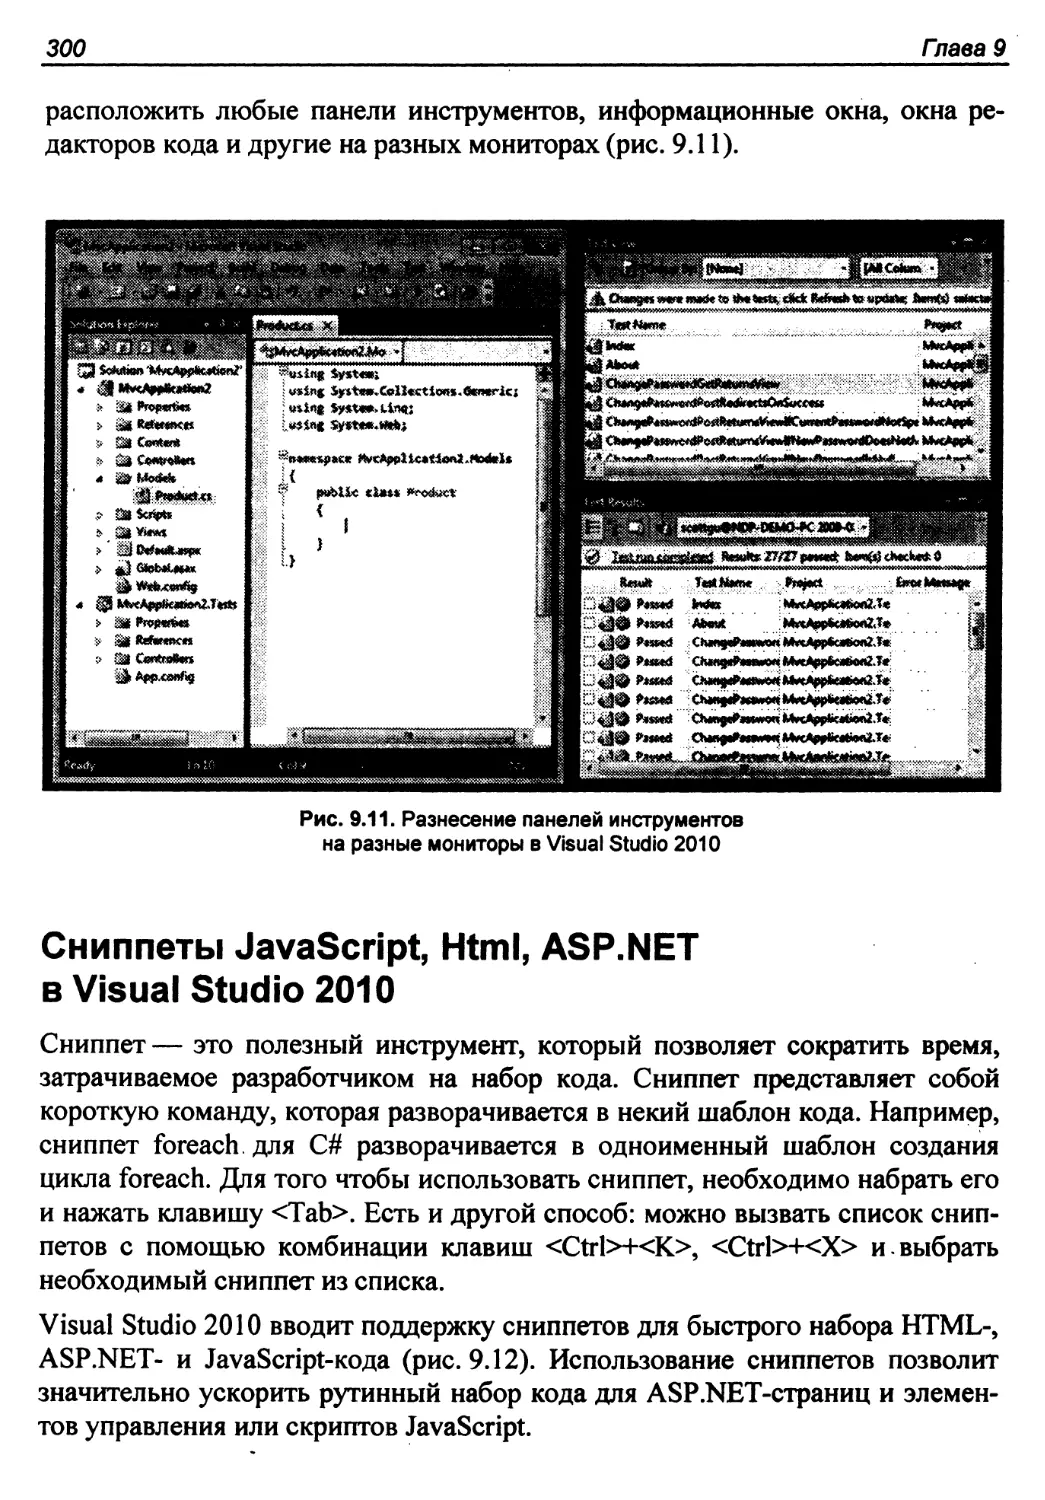 Сниппеты JavaScript, Html, ASP.NET в Visual Studio 2010